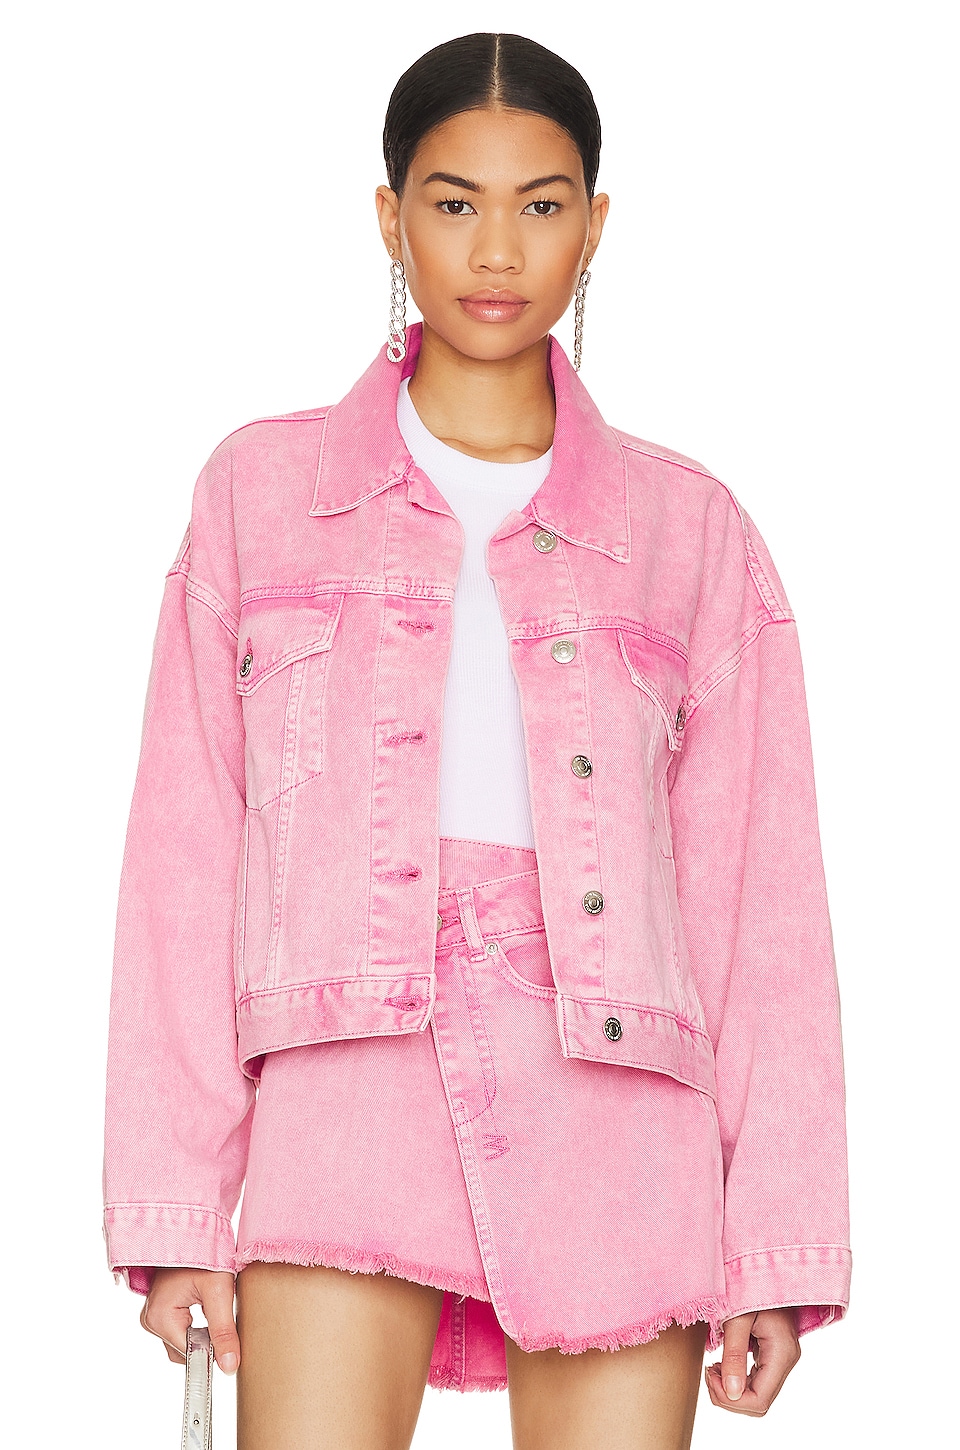 Steve Madden Sienna Jacket in Pink Glo